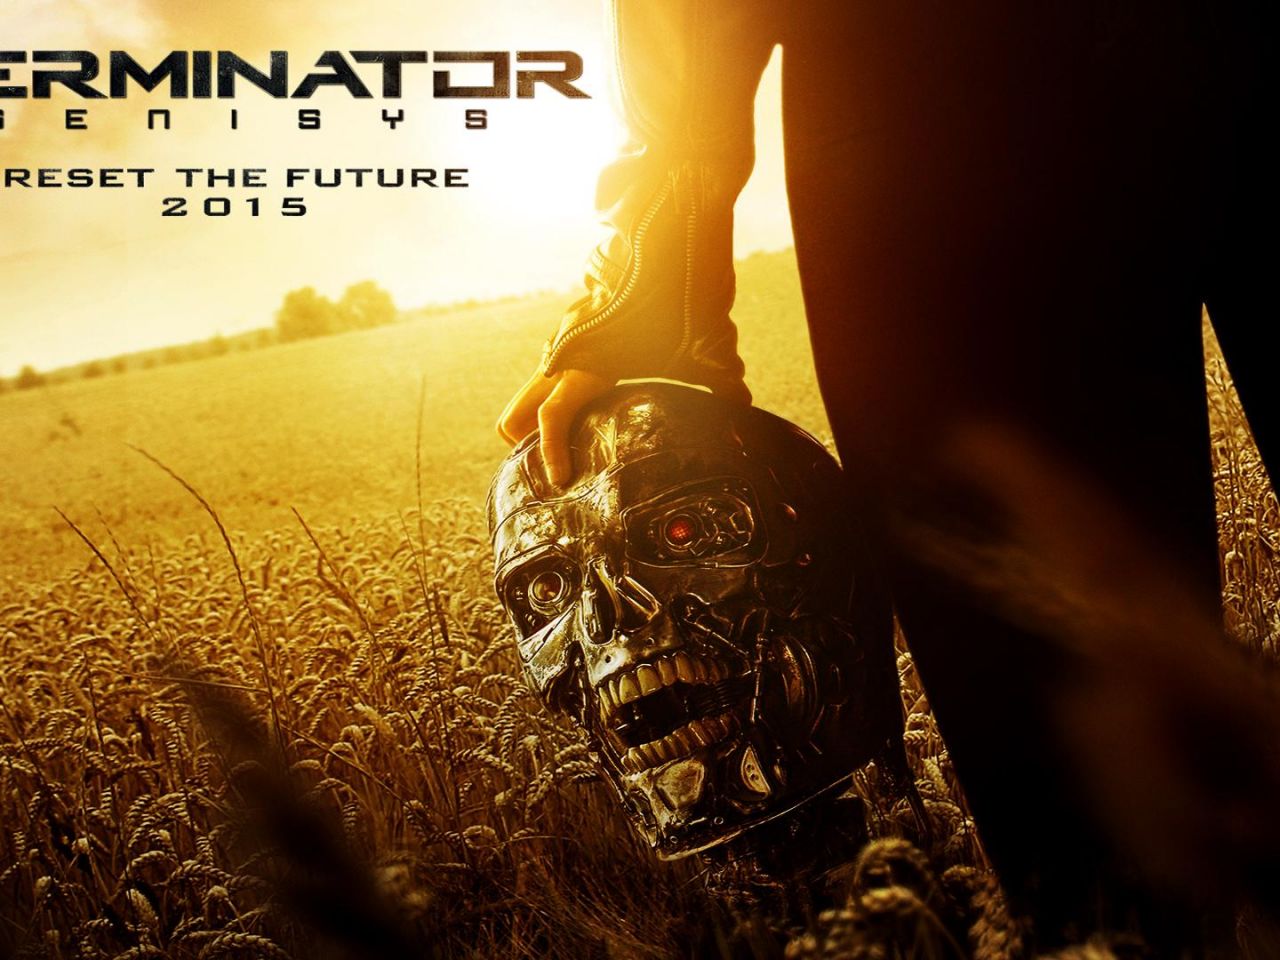 Фильм Терминатор: Генезис | Terminator: Genisys - лучшие обои для рабочего стола